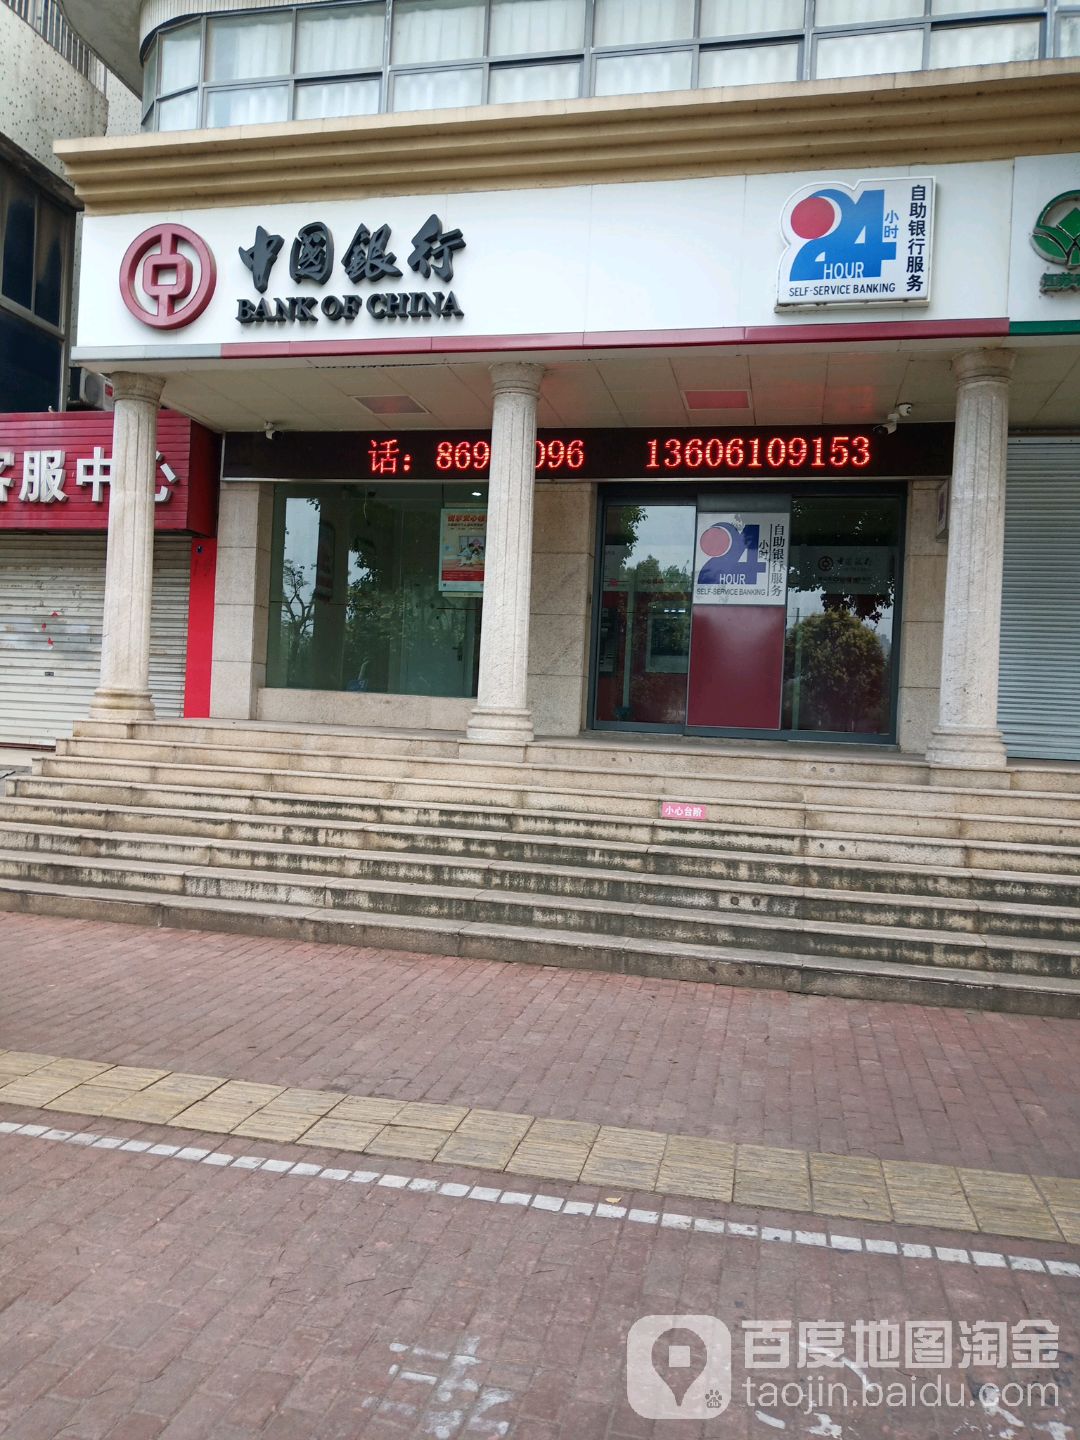 中國銀行24小時自助銀行(西環路店)